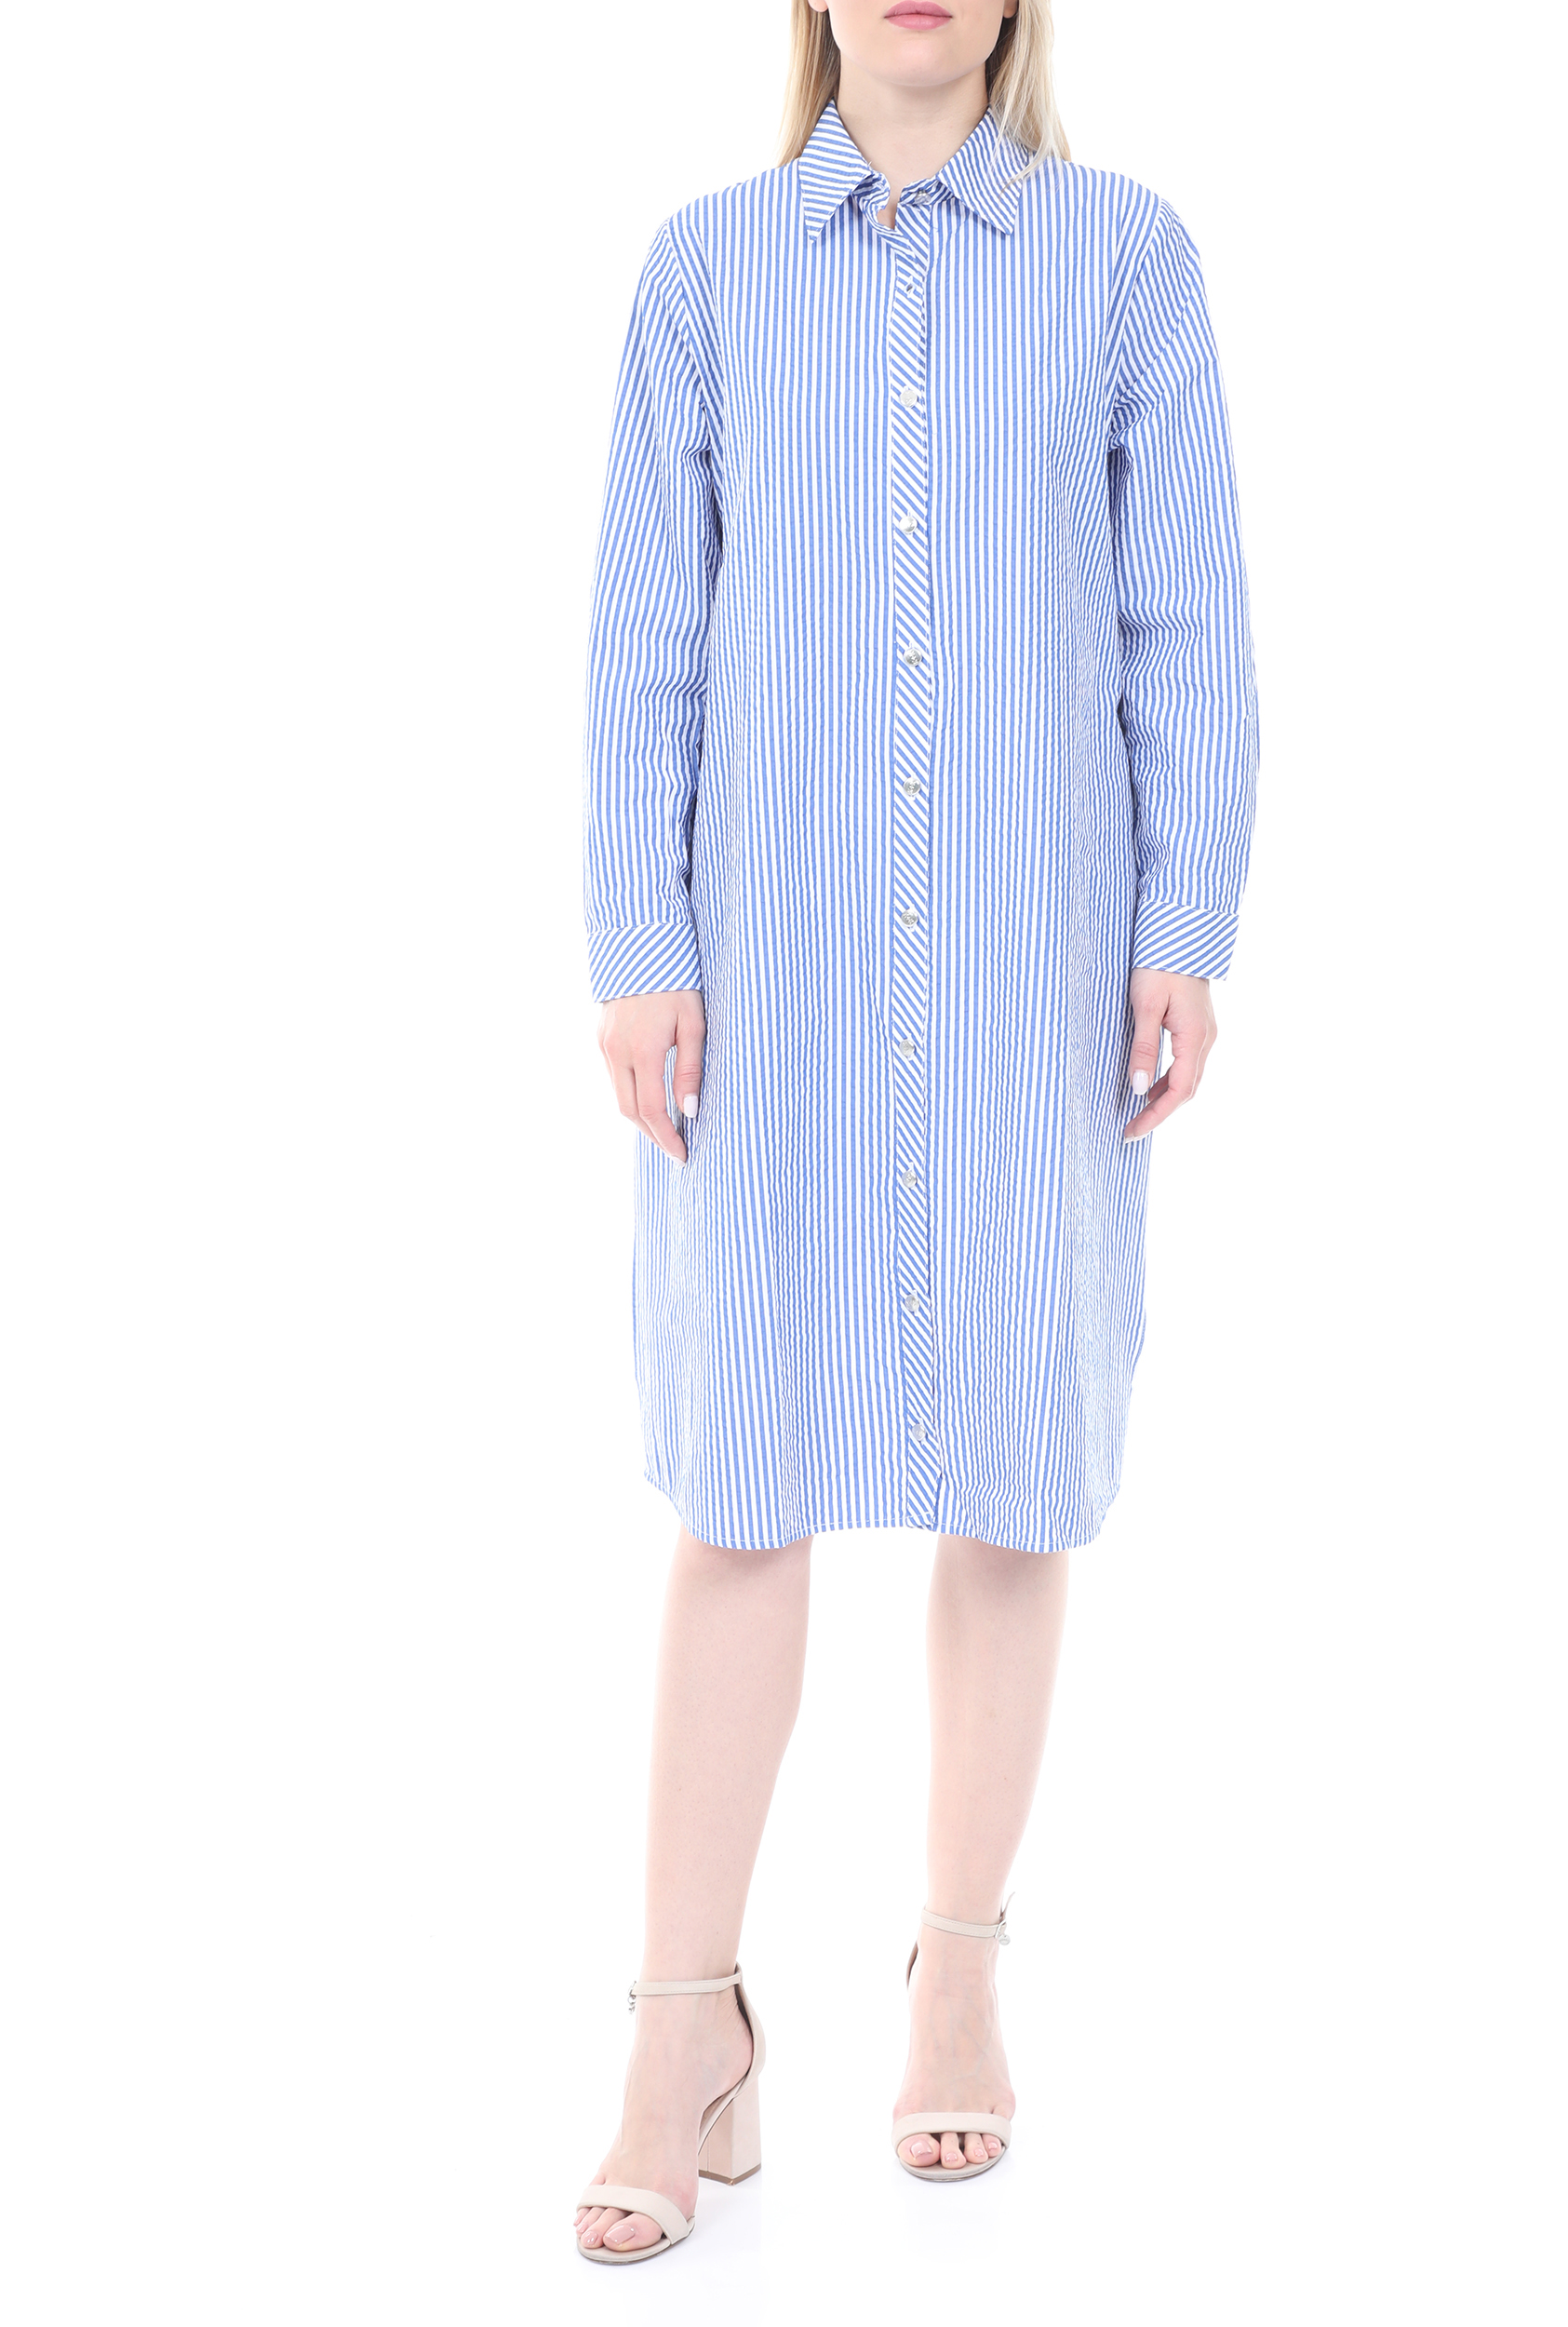 Γυναικεία/Ρούχα/Φόρεματα/Μίνι KENDALL + KYLIE - Γυναικείο mini φόρεμα KENDALL + KYLIE NAVY STRIPE LOOSE μπλε λευκό